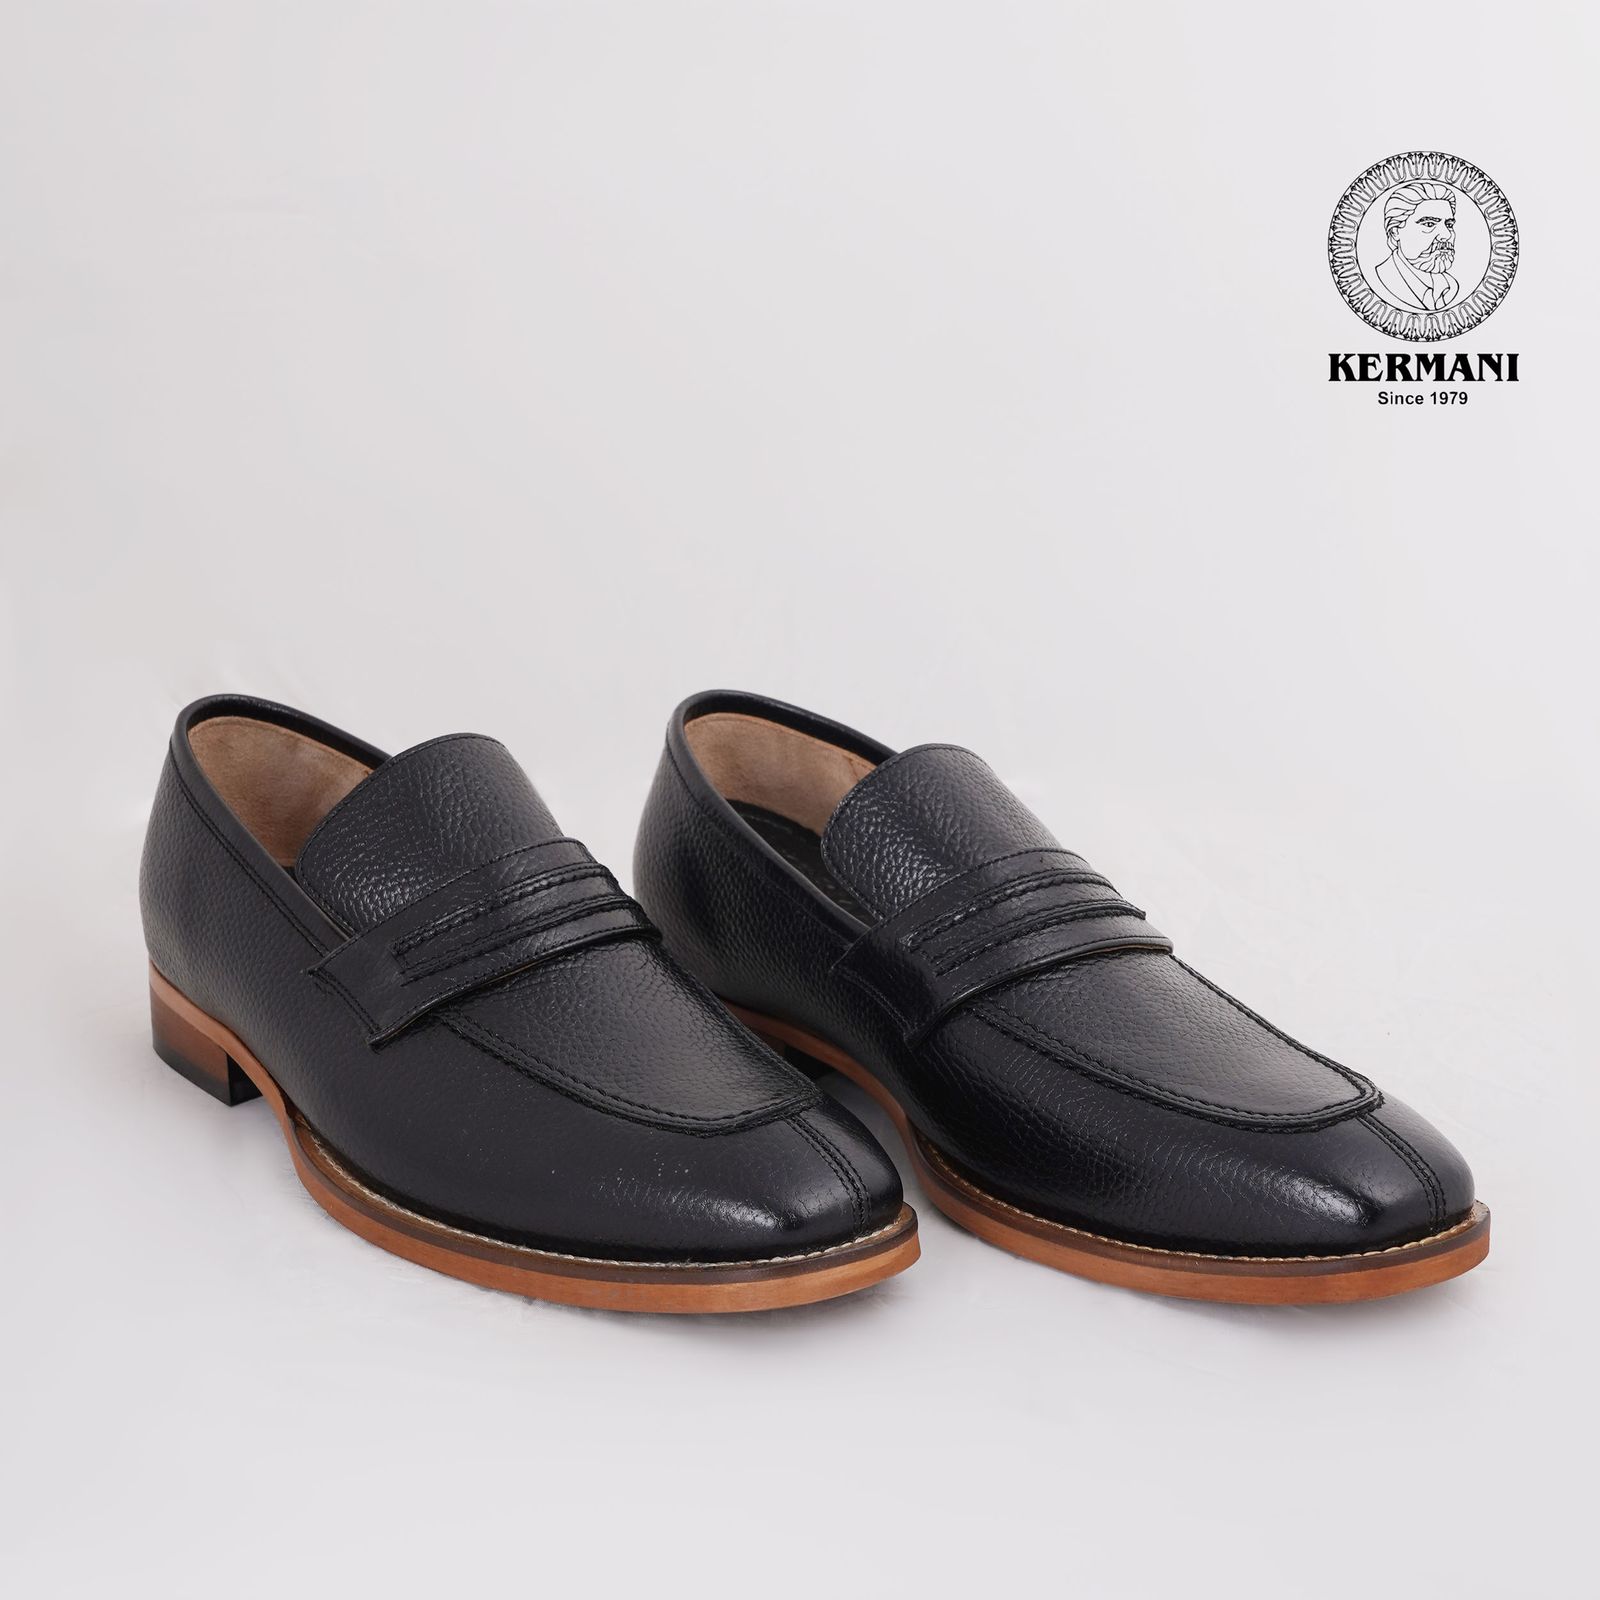 کفش مردانه کرمانی مدل چرم دستدوز طبیعی فلوتر کد 1064 رنگ مشکی -  - 5